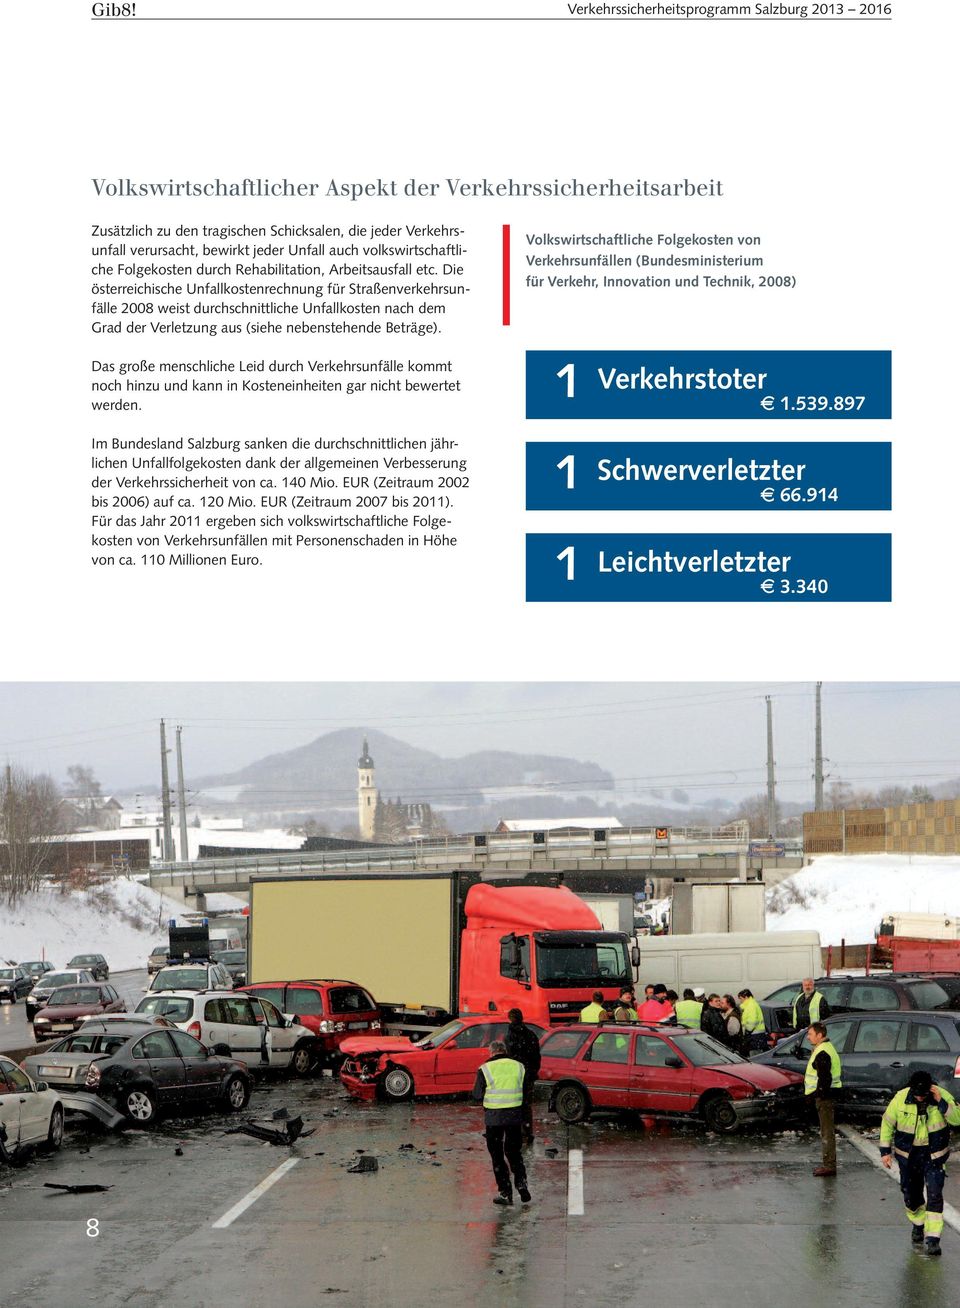 Die österreichische Unfallkostenrechnung für Straßenverkehrsunfälle 2008 weist durchschnittliche Unfallkosten nach dem Grad der Verletzung aus (siehe nebenstehende Beträge).